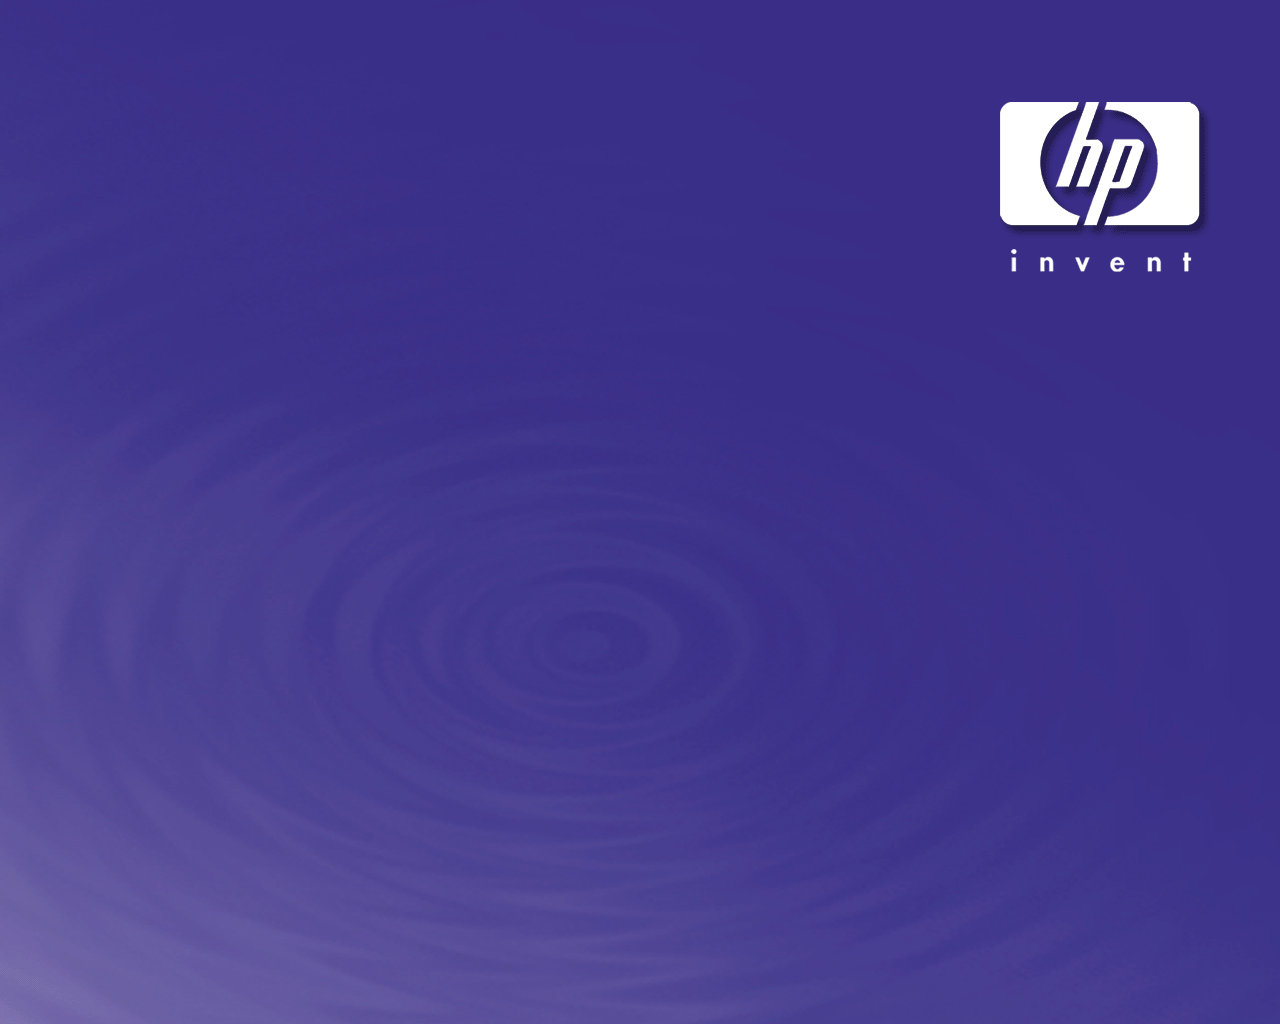  Hewlett-Packard